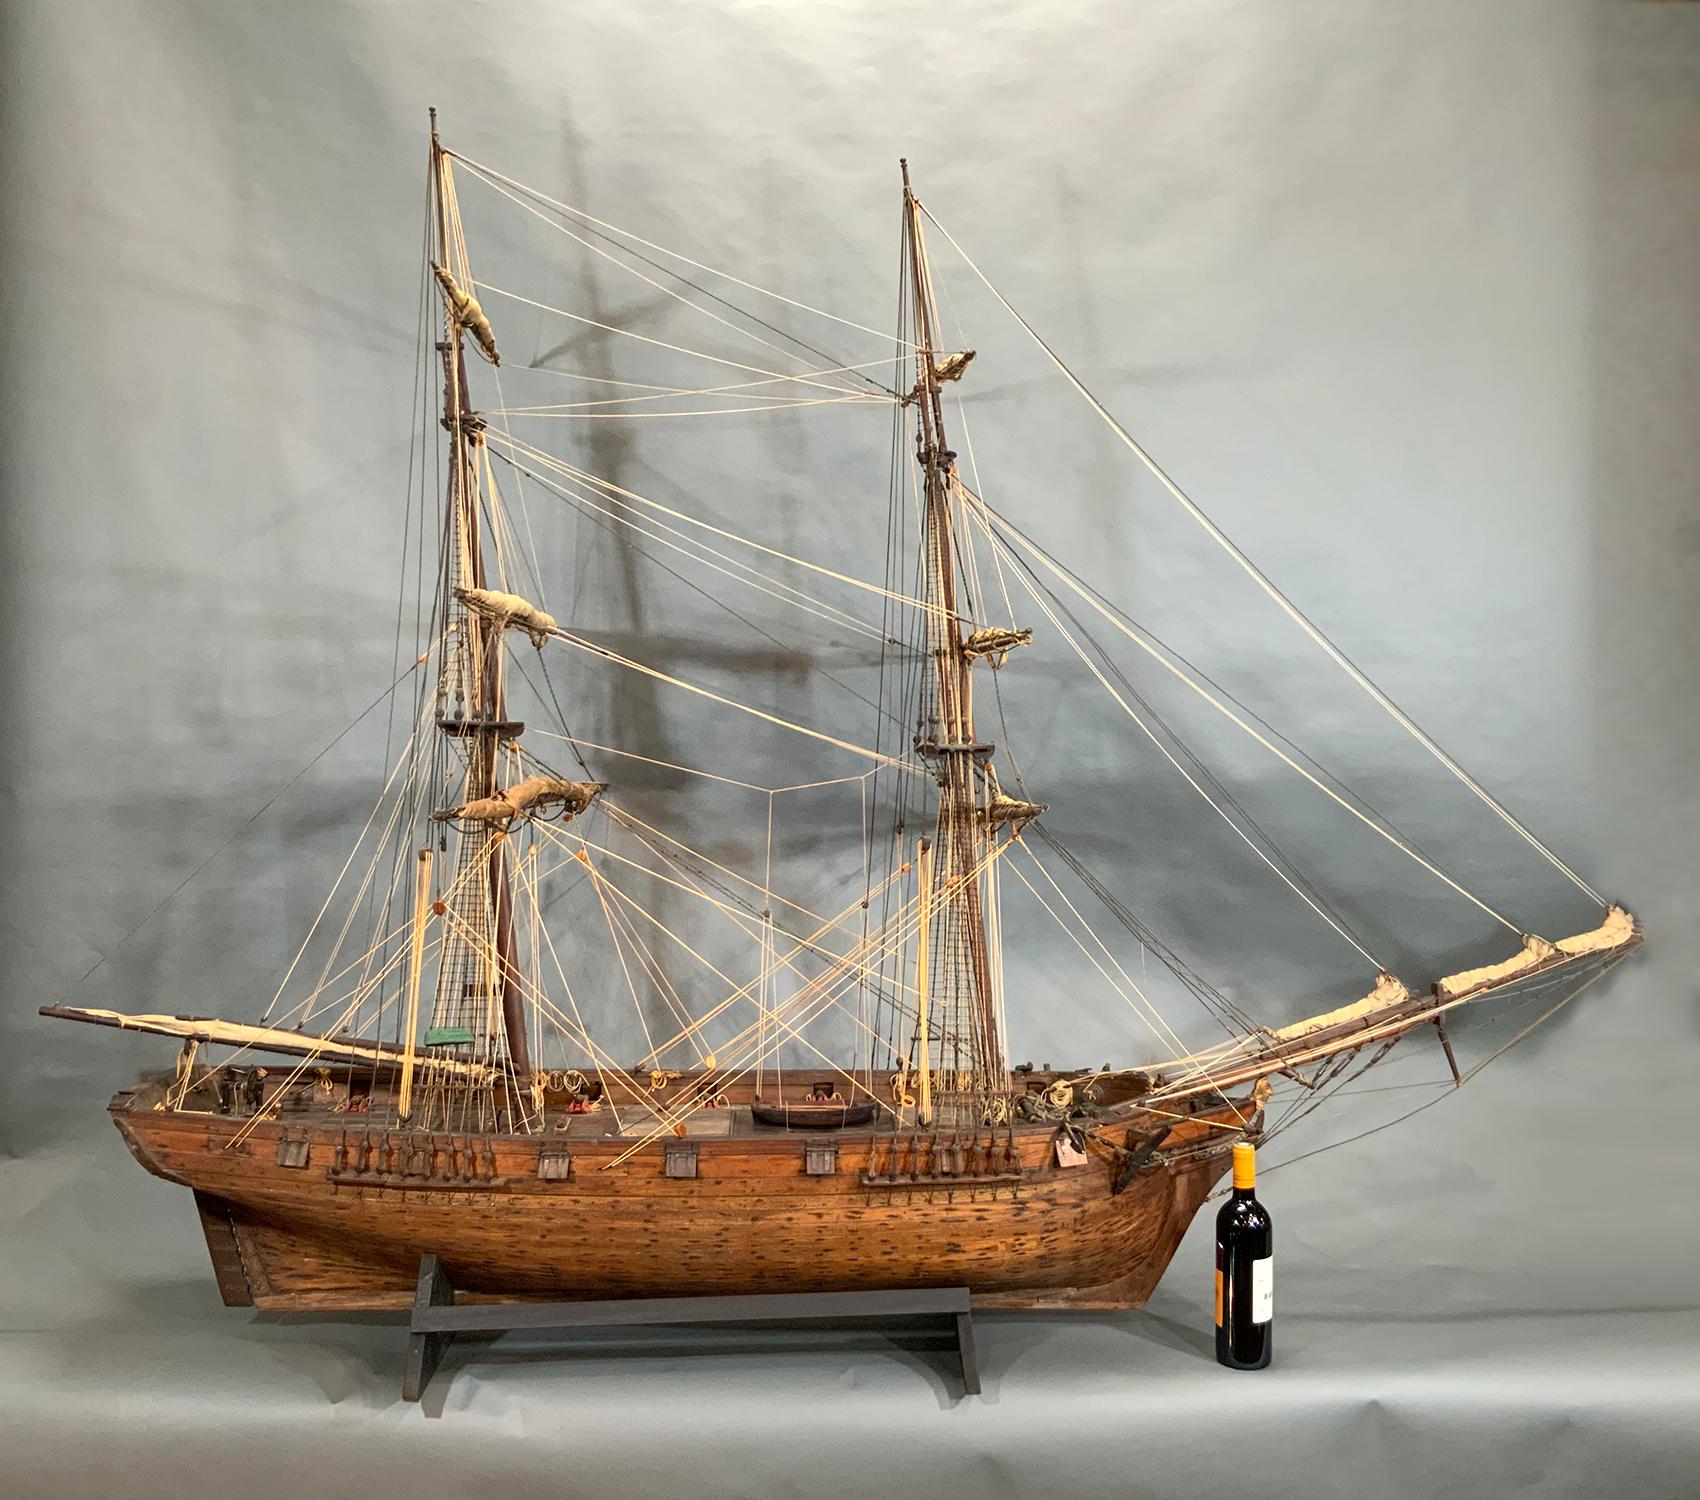 Modèle de bateau du XIXe siècle d'un brick américain provenant du très estimé New Bedford Whaling Museum, anciennement Old Dartmouth Historical Society, avec des planches de bord sculptées, une coque et un pont en planches. Entièrement gréé, voiles